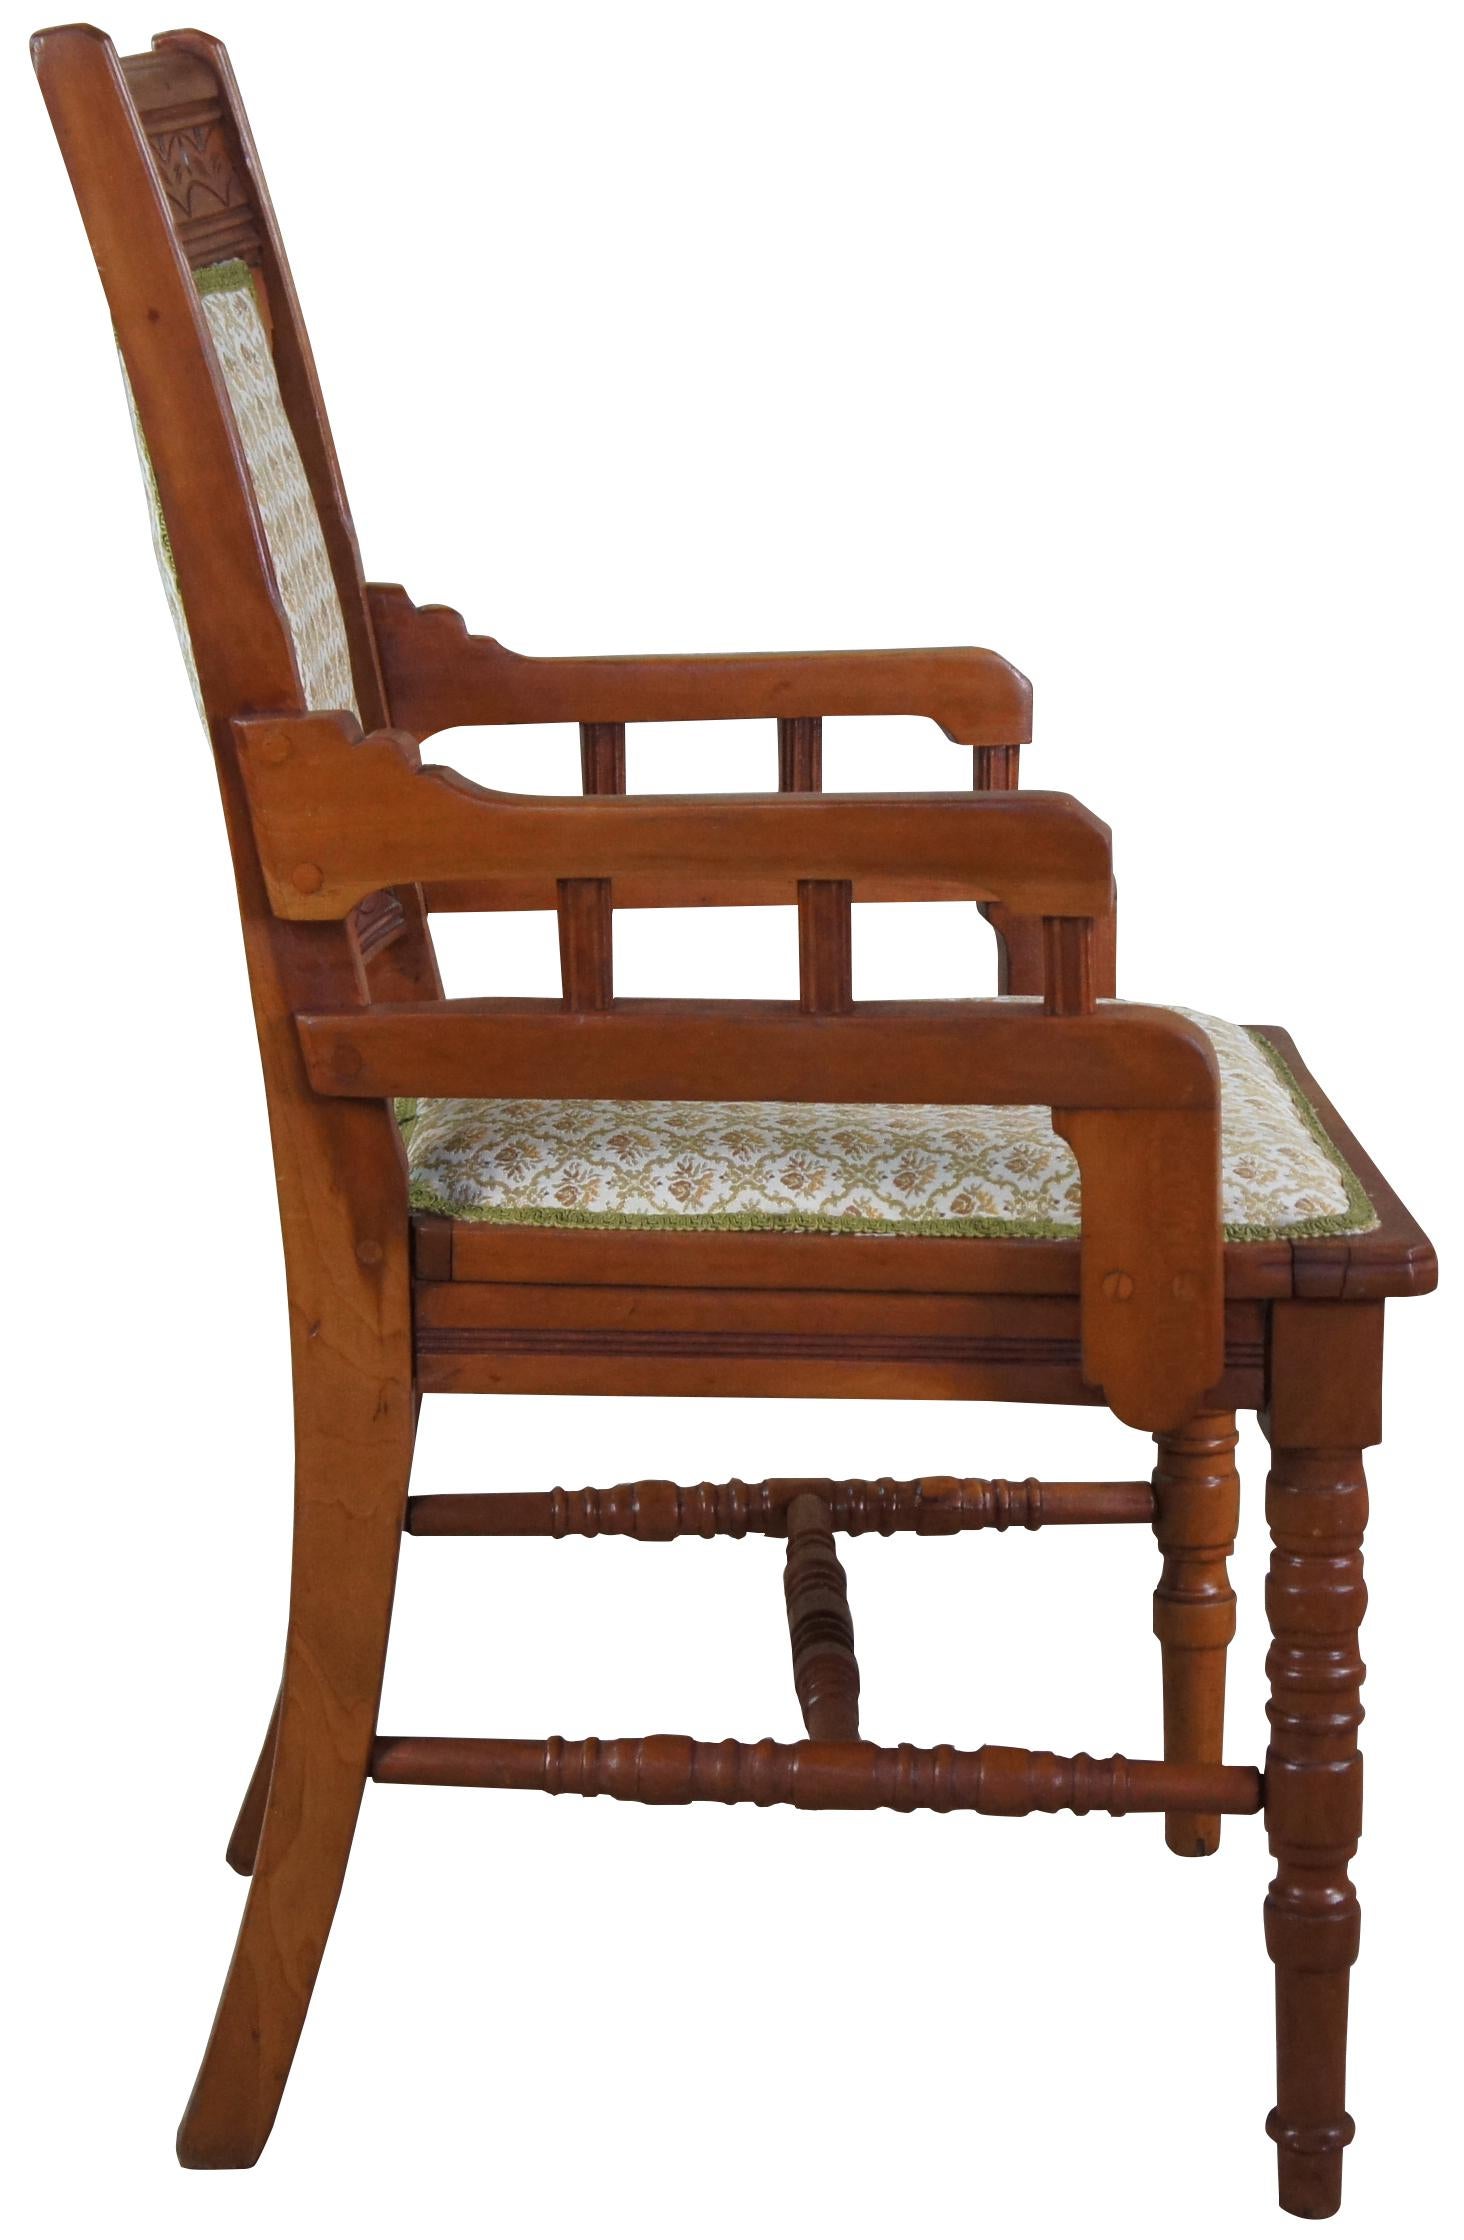 eastlake chair styles